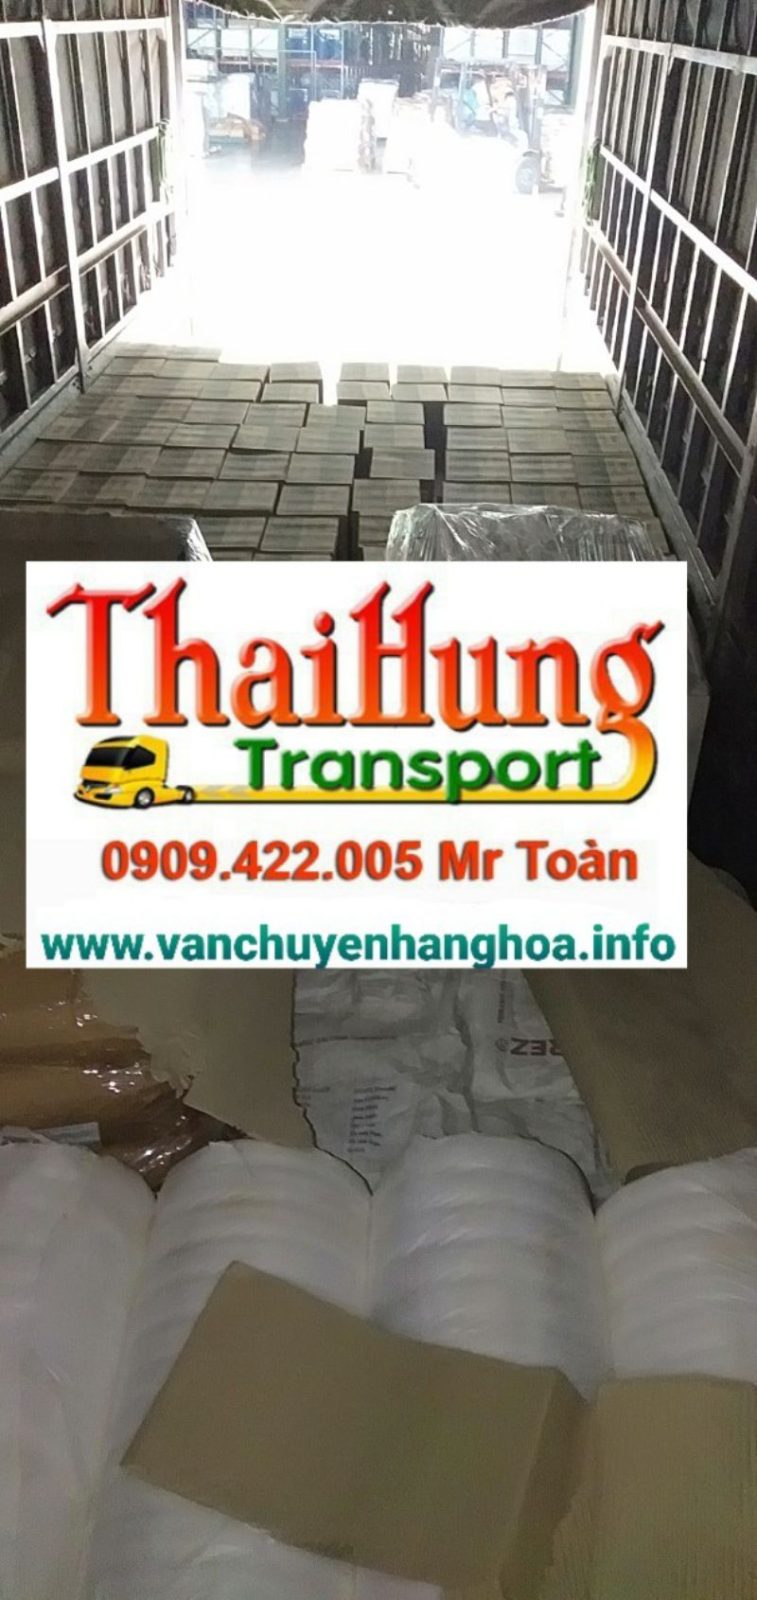 Hiện tại Thái Hùng đã phục vụ khách hàng trên toàn địa bàn Quảng Ngãi